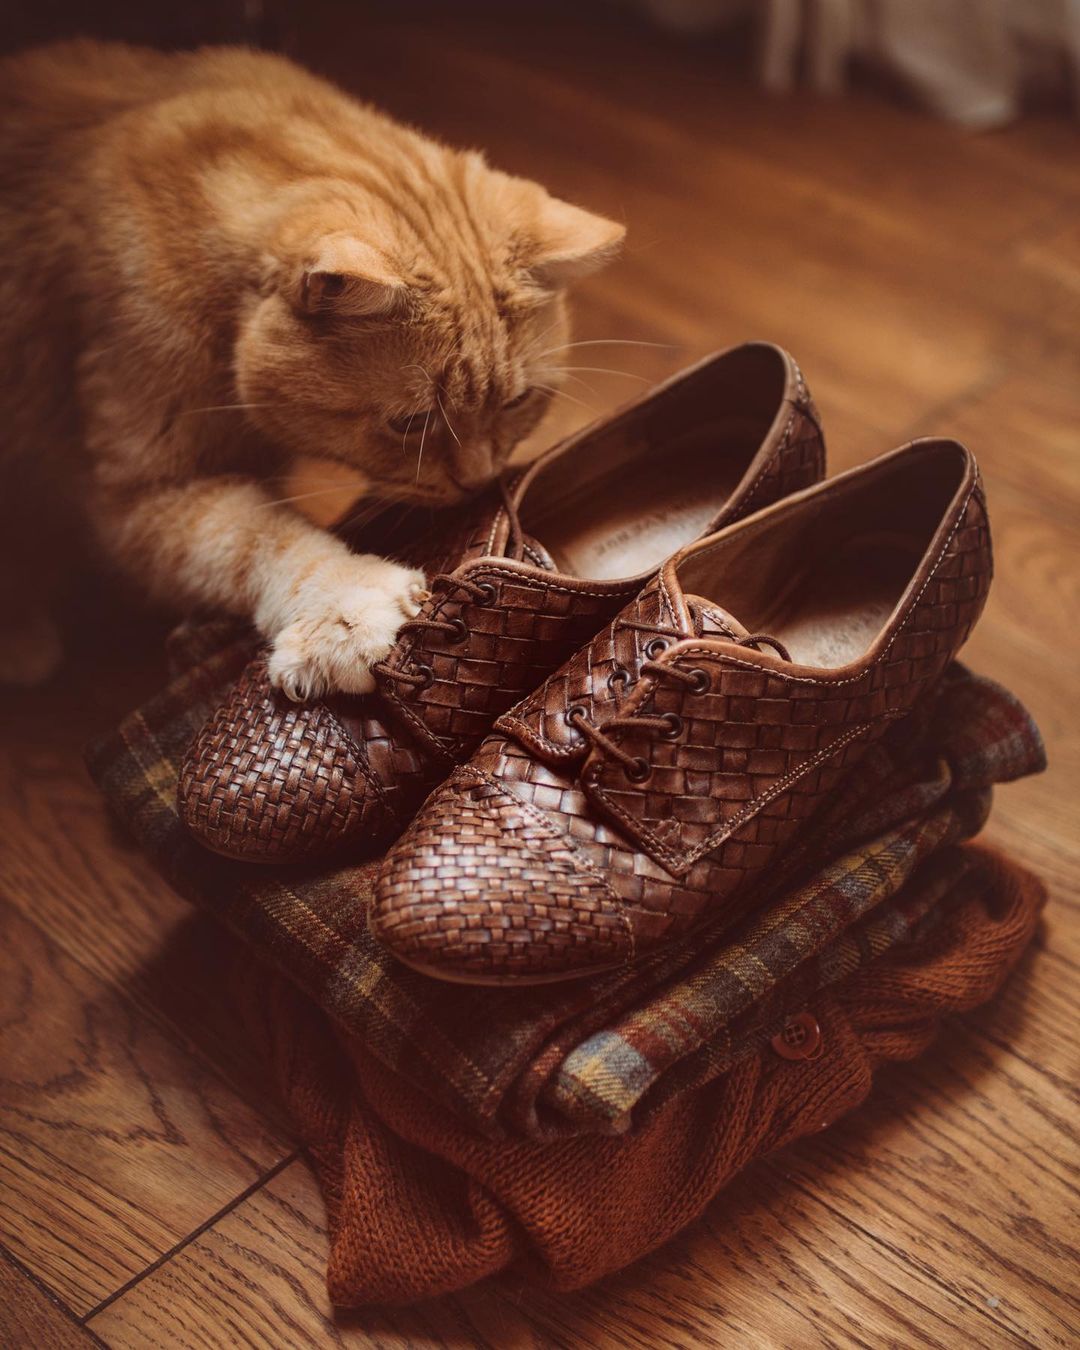 Фото Рыжий кот положил лапу на туфель, by waitingforalice